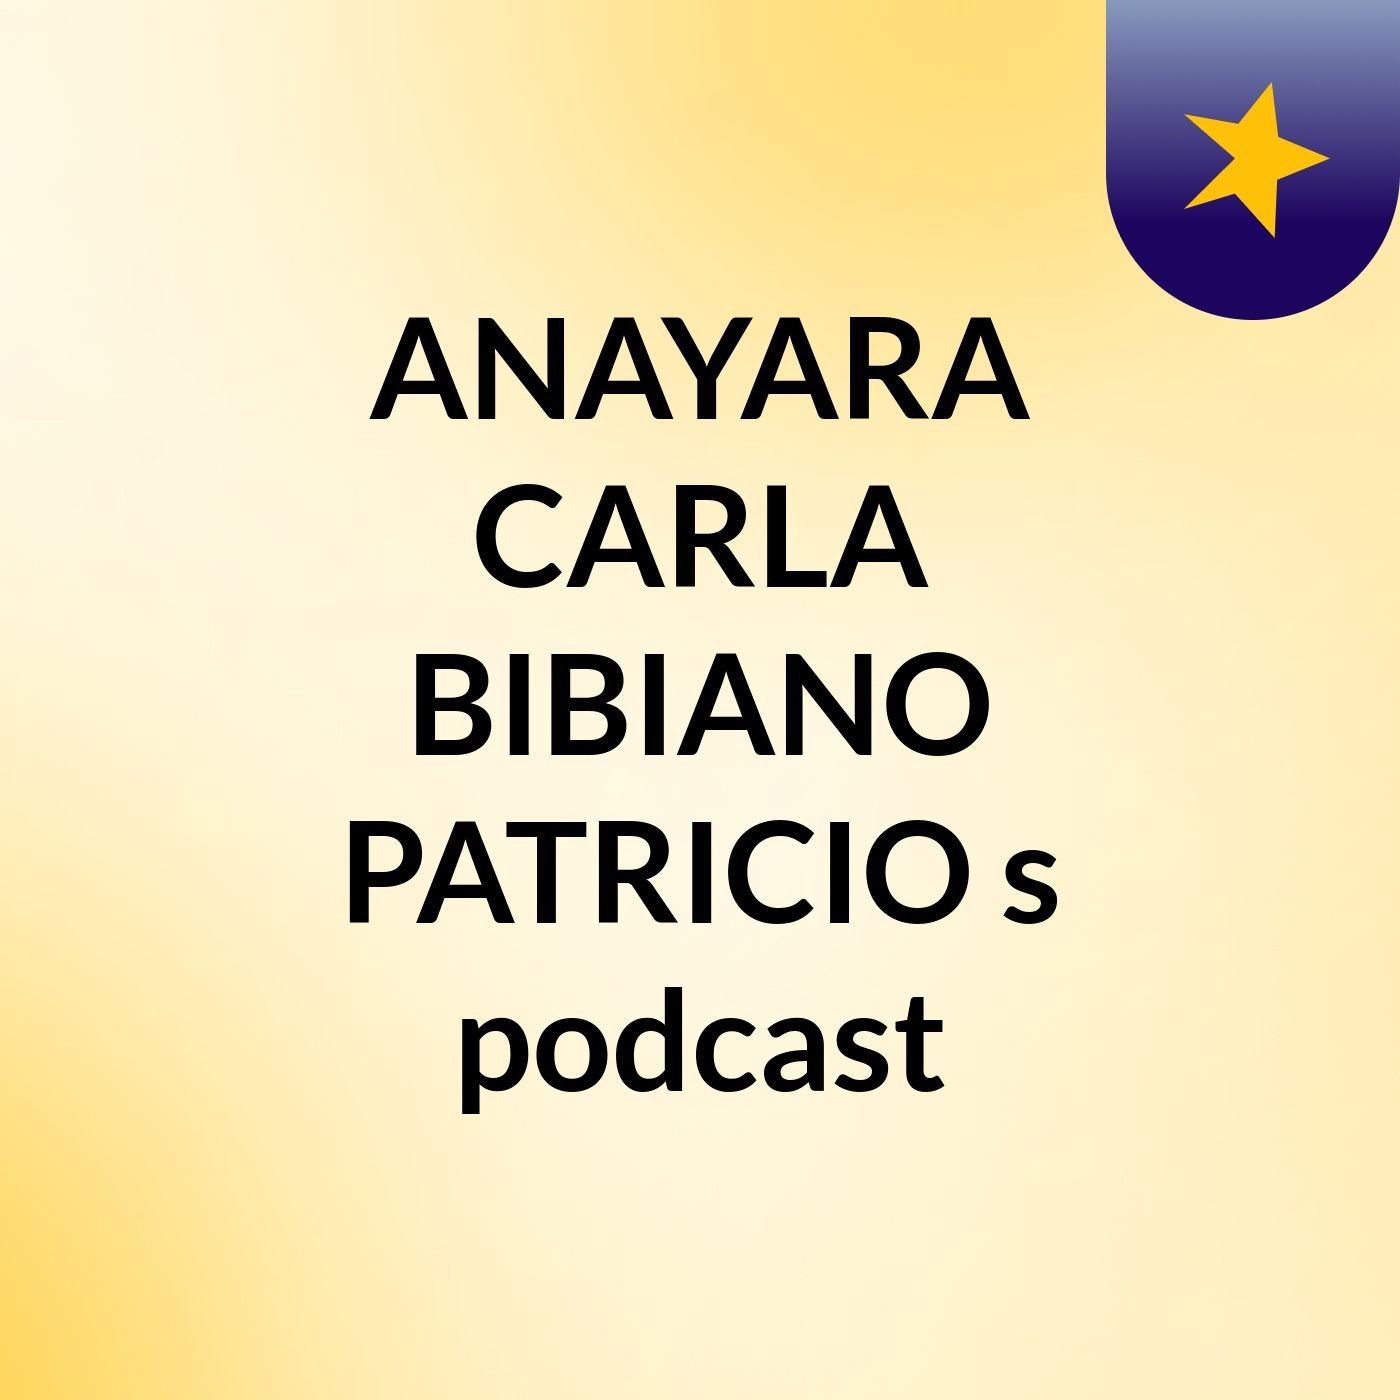 ANAYARA CARLA BIBIANO PATRICIO's podcast